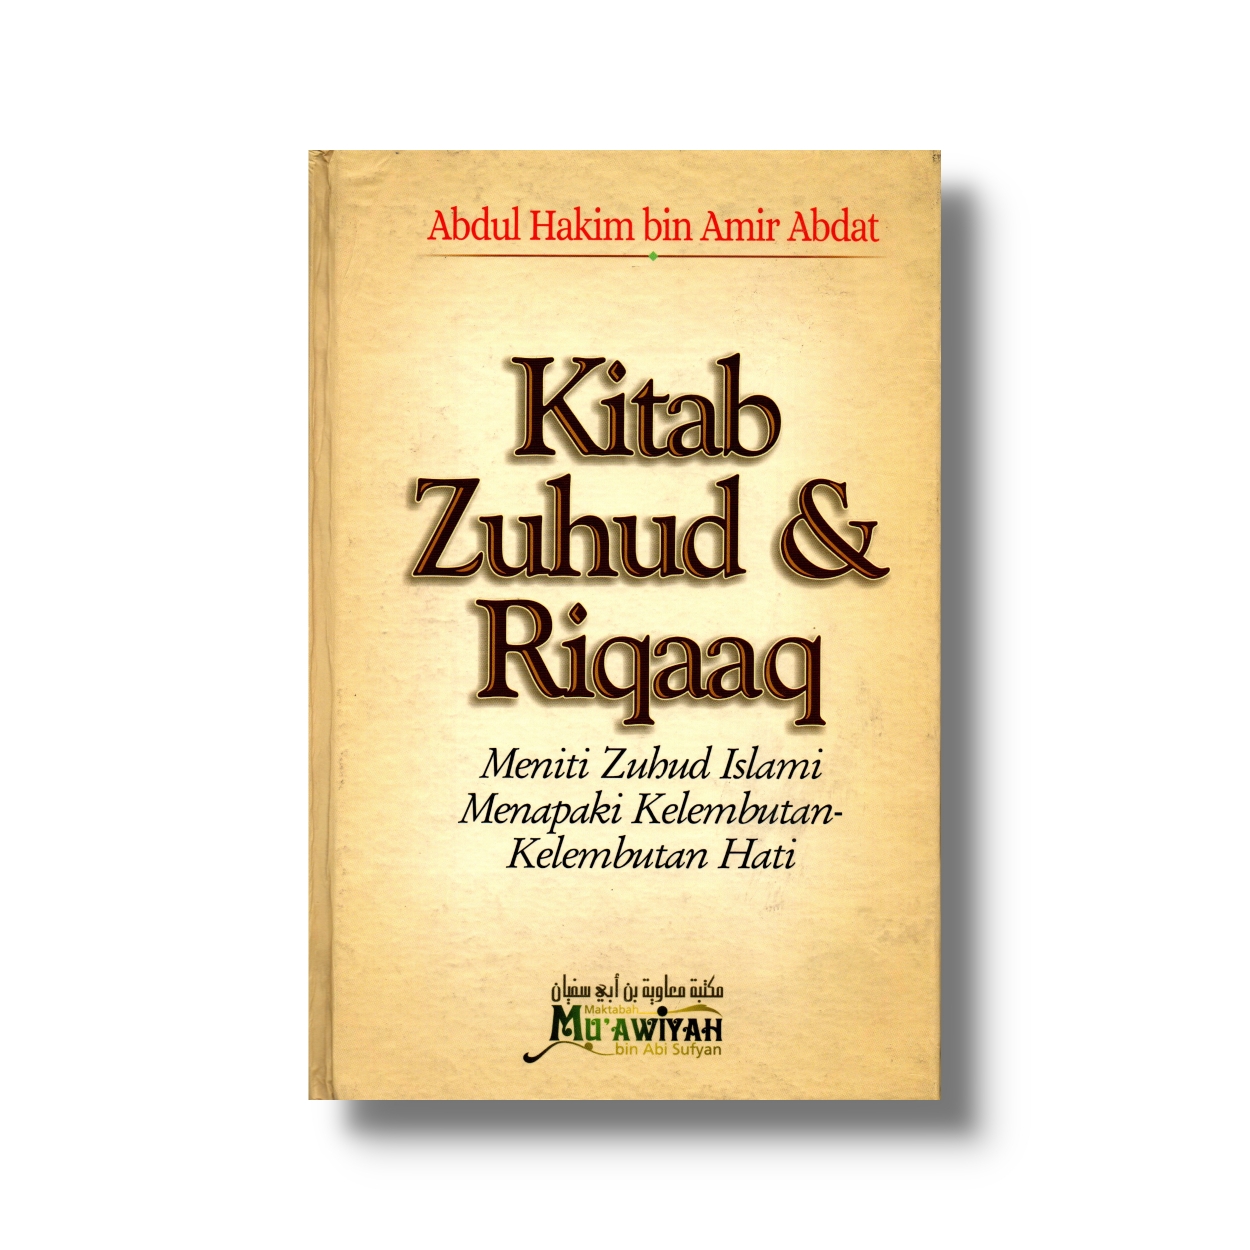 Kitab Zuhud & Riqaaq :  Meniti Zuhud Islami Menapaki Kelembutan-kelembutan Hati